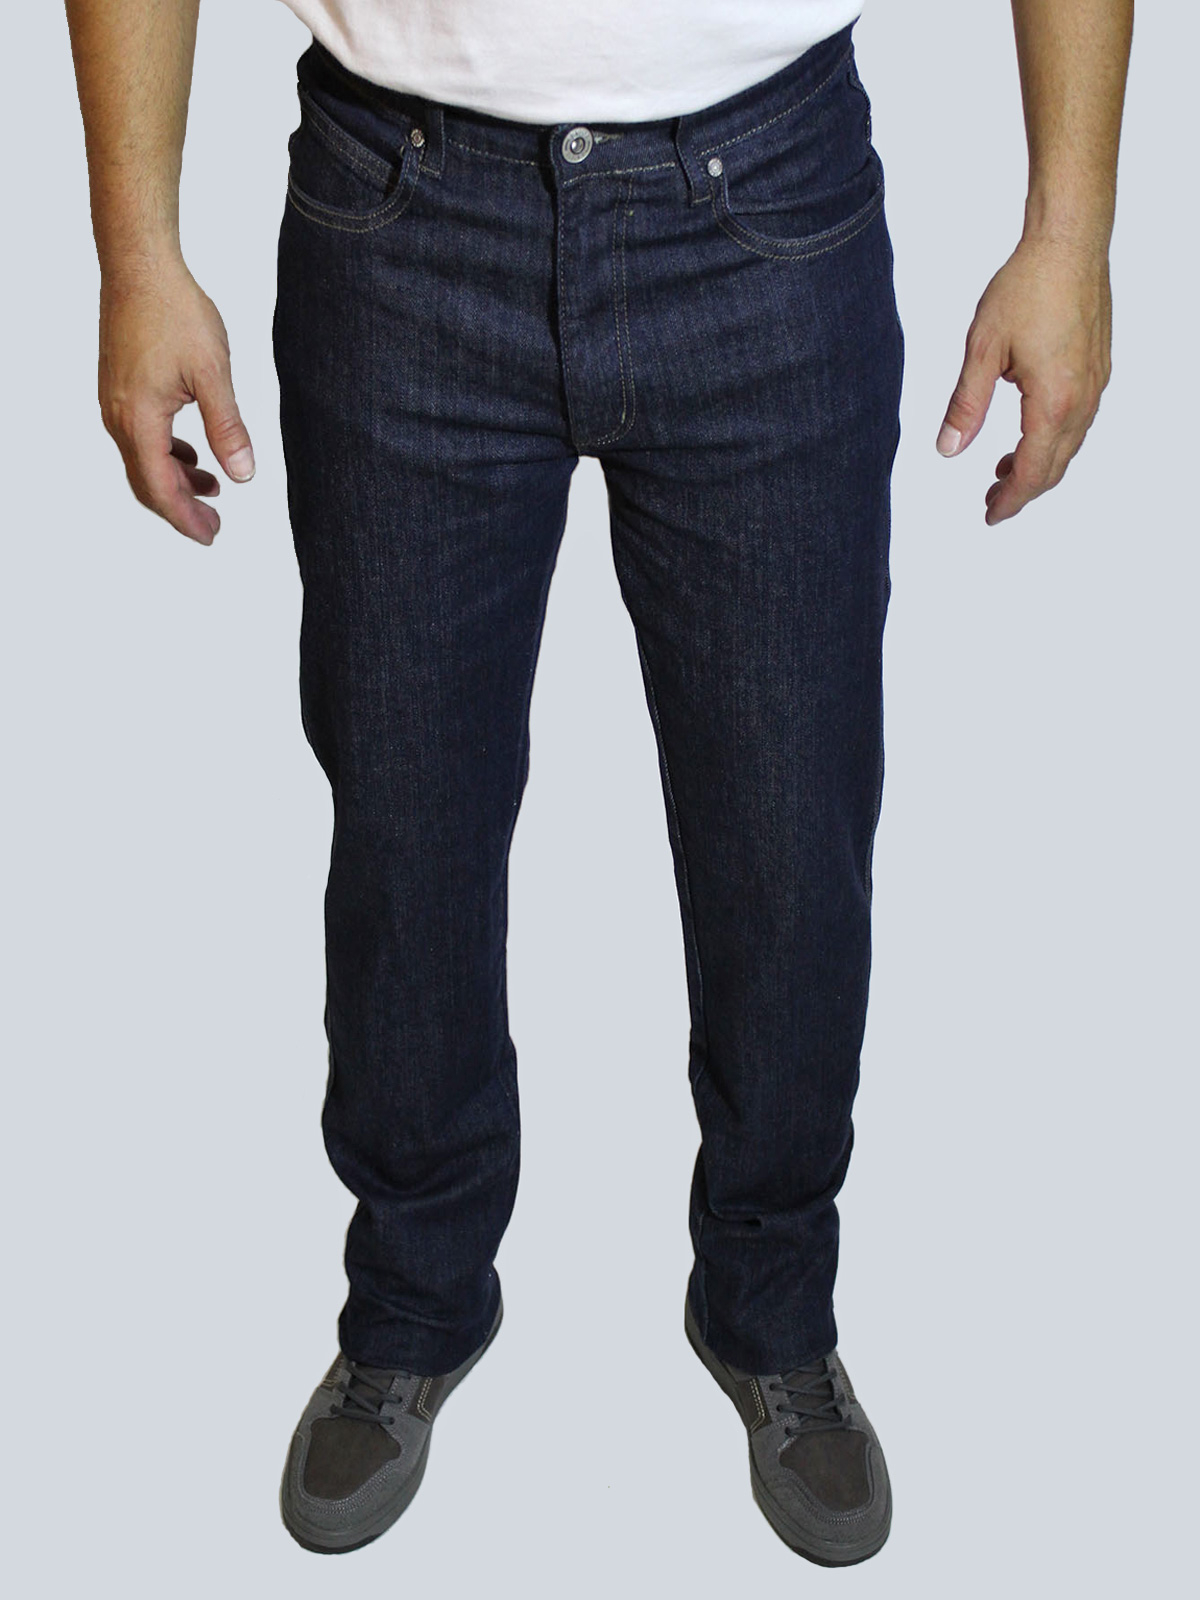 Takhiro pantalones vaqueros de hombre básicos rectos 21120/72 azul oscuro